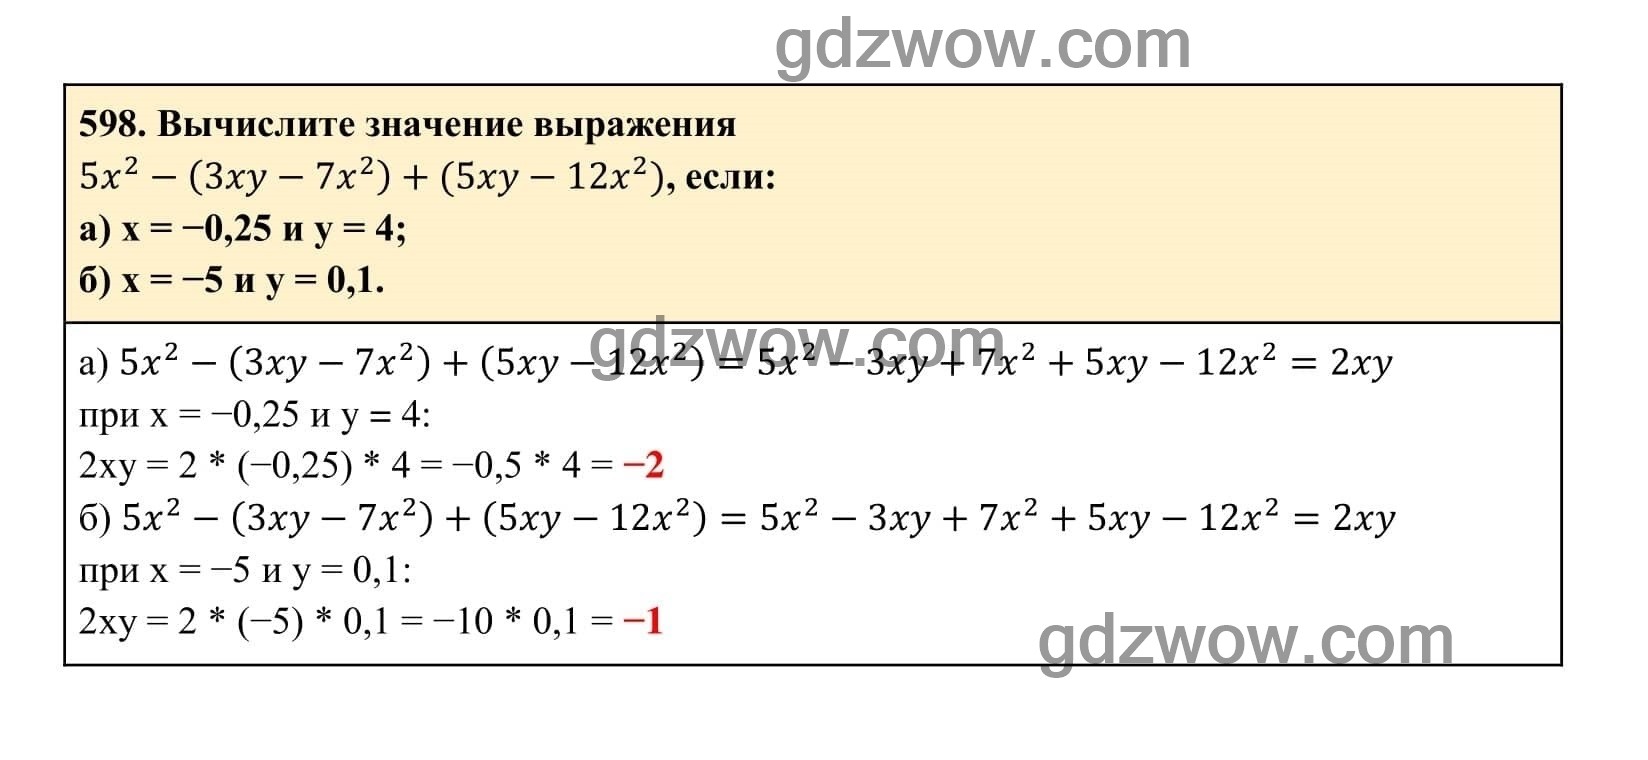 Упражнение 598 - ГДЗ по Алгебре 7 класс Учебник Макарычев (решебник) - GDZwow